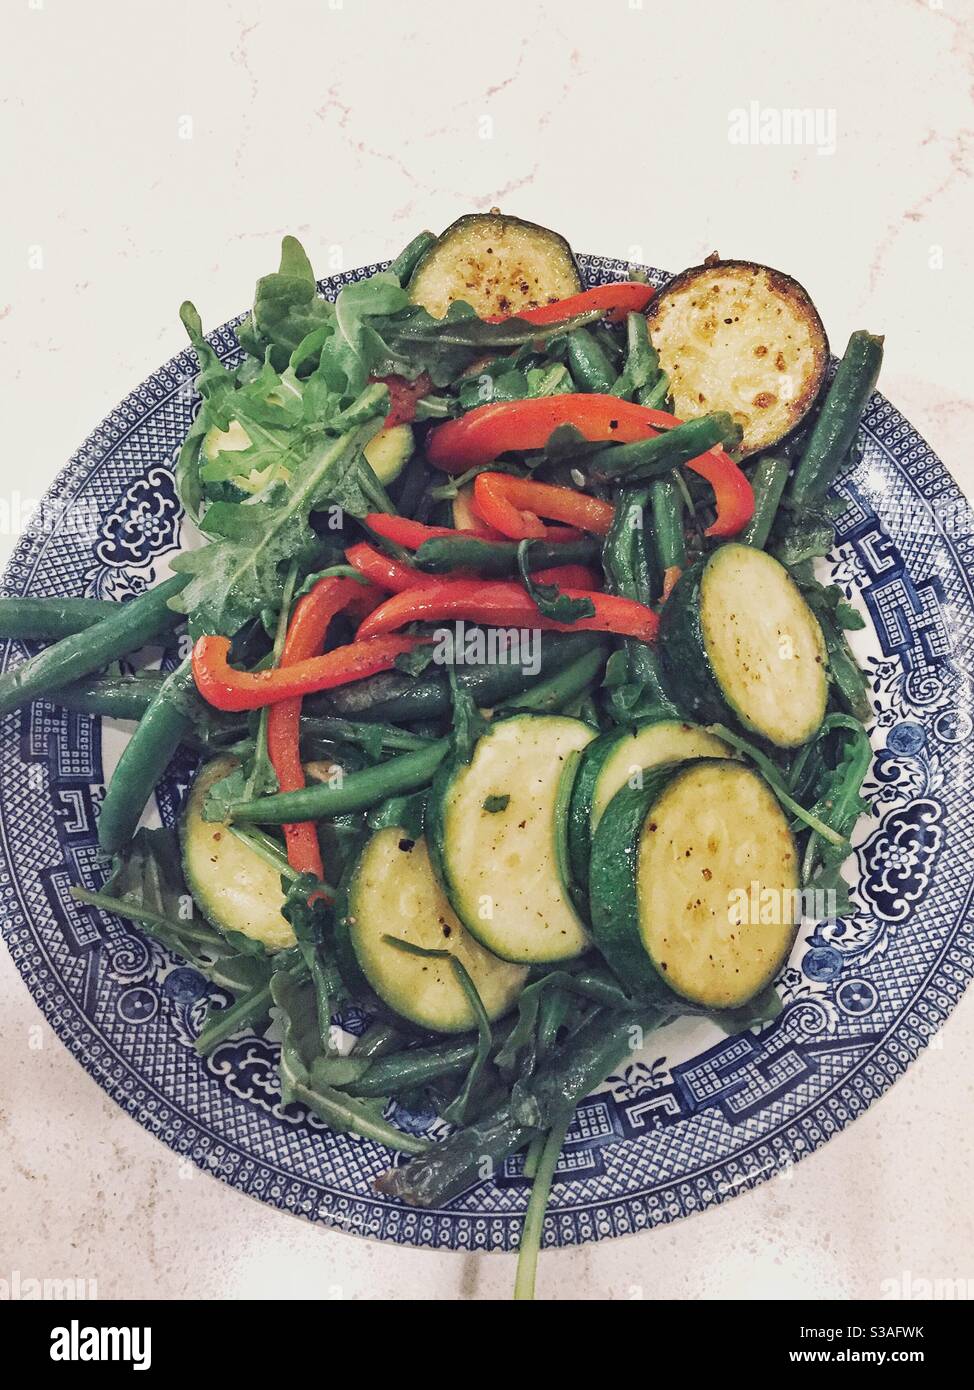 Sautierte gesundes grünes Gemüse in einer hübschen blauen Weidenschale. Stockfoto